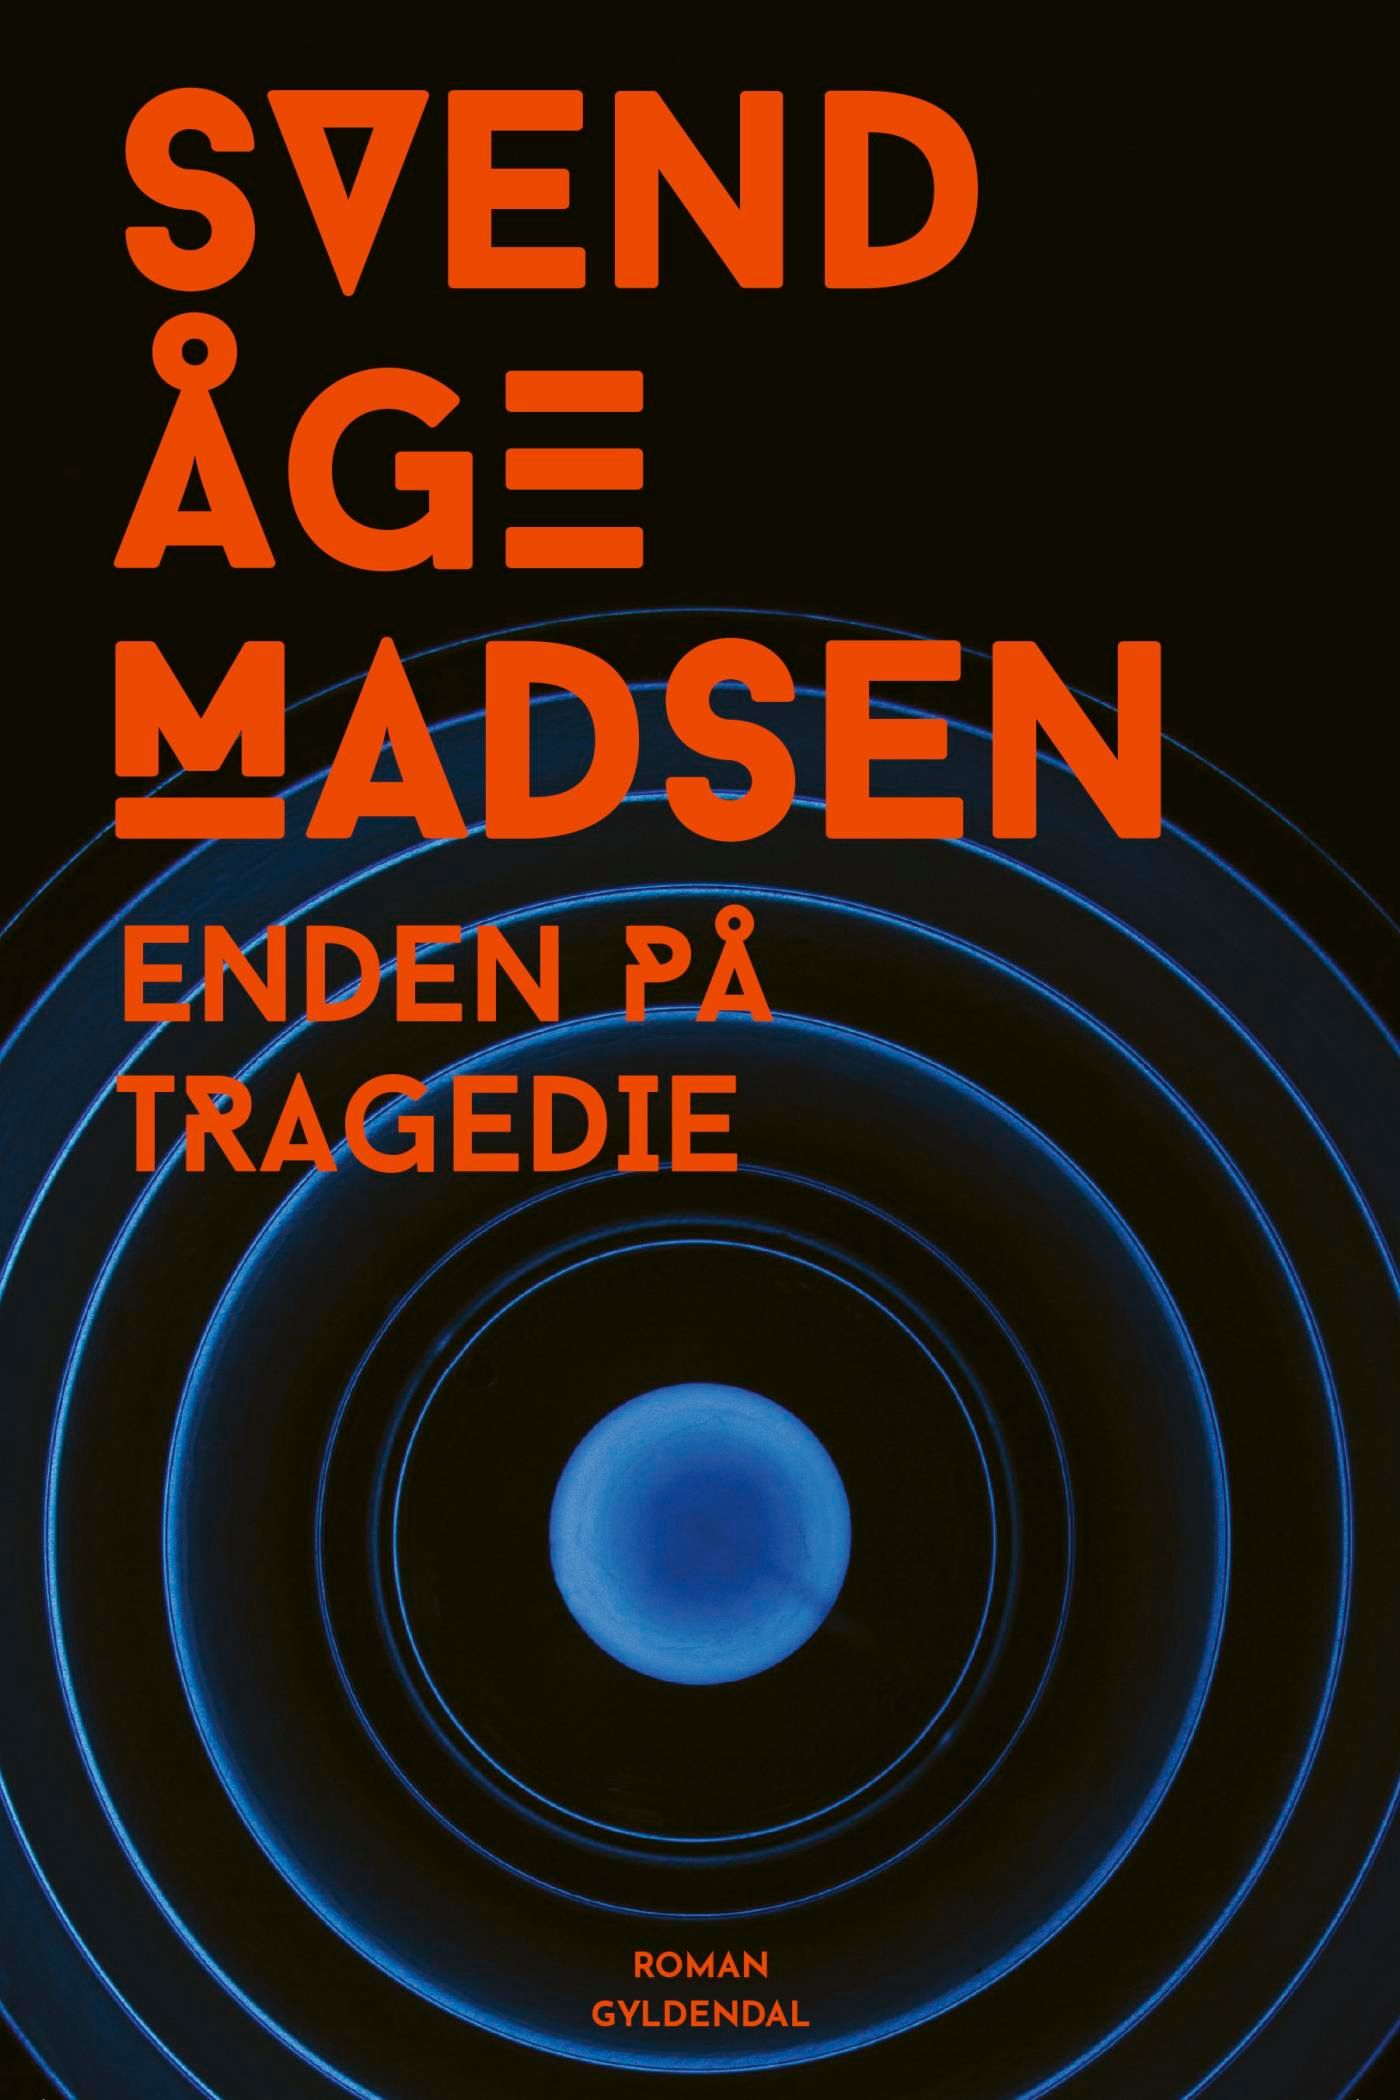 Enden på tragedie, e-bog af Svend Åge Madsen